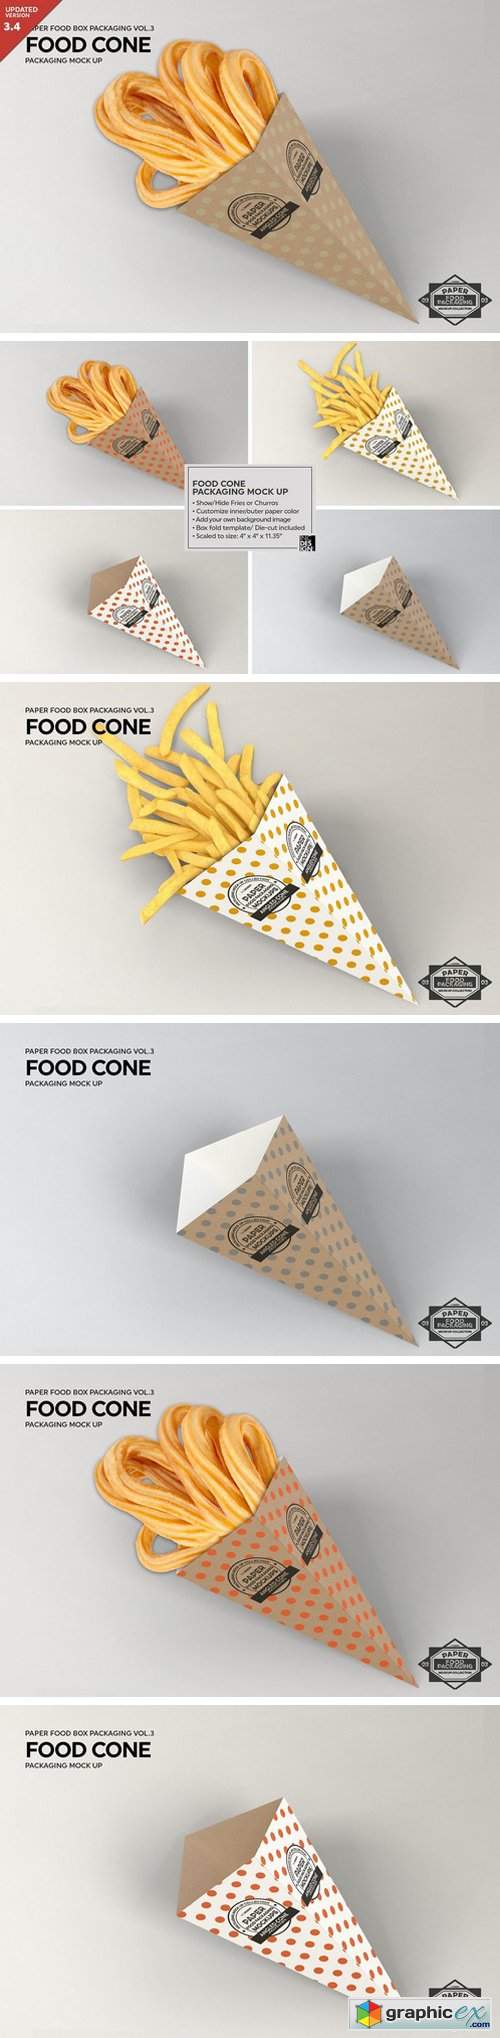 Paper Food Cone Packaging Mockup